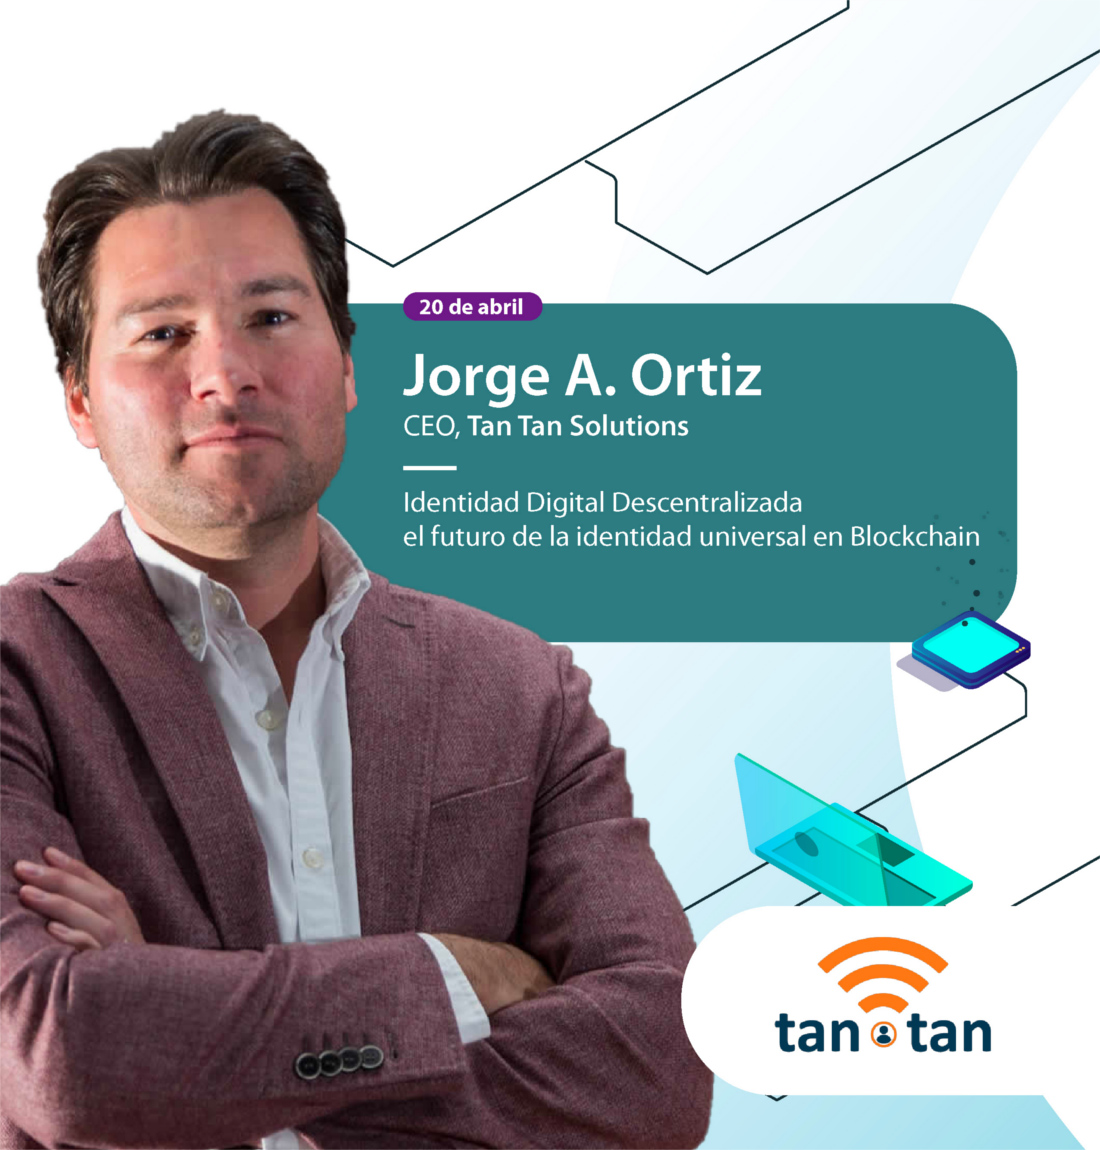 Jorge A. Ortiz